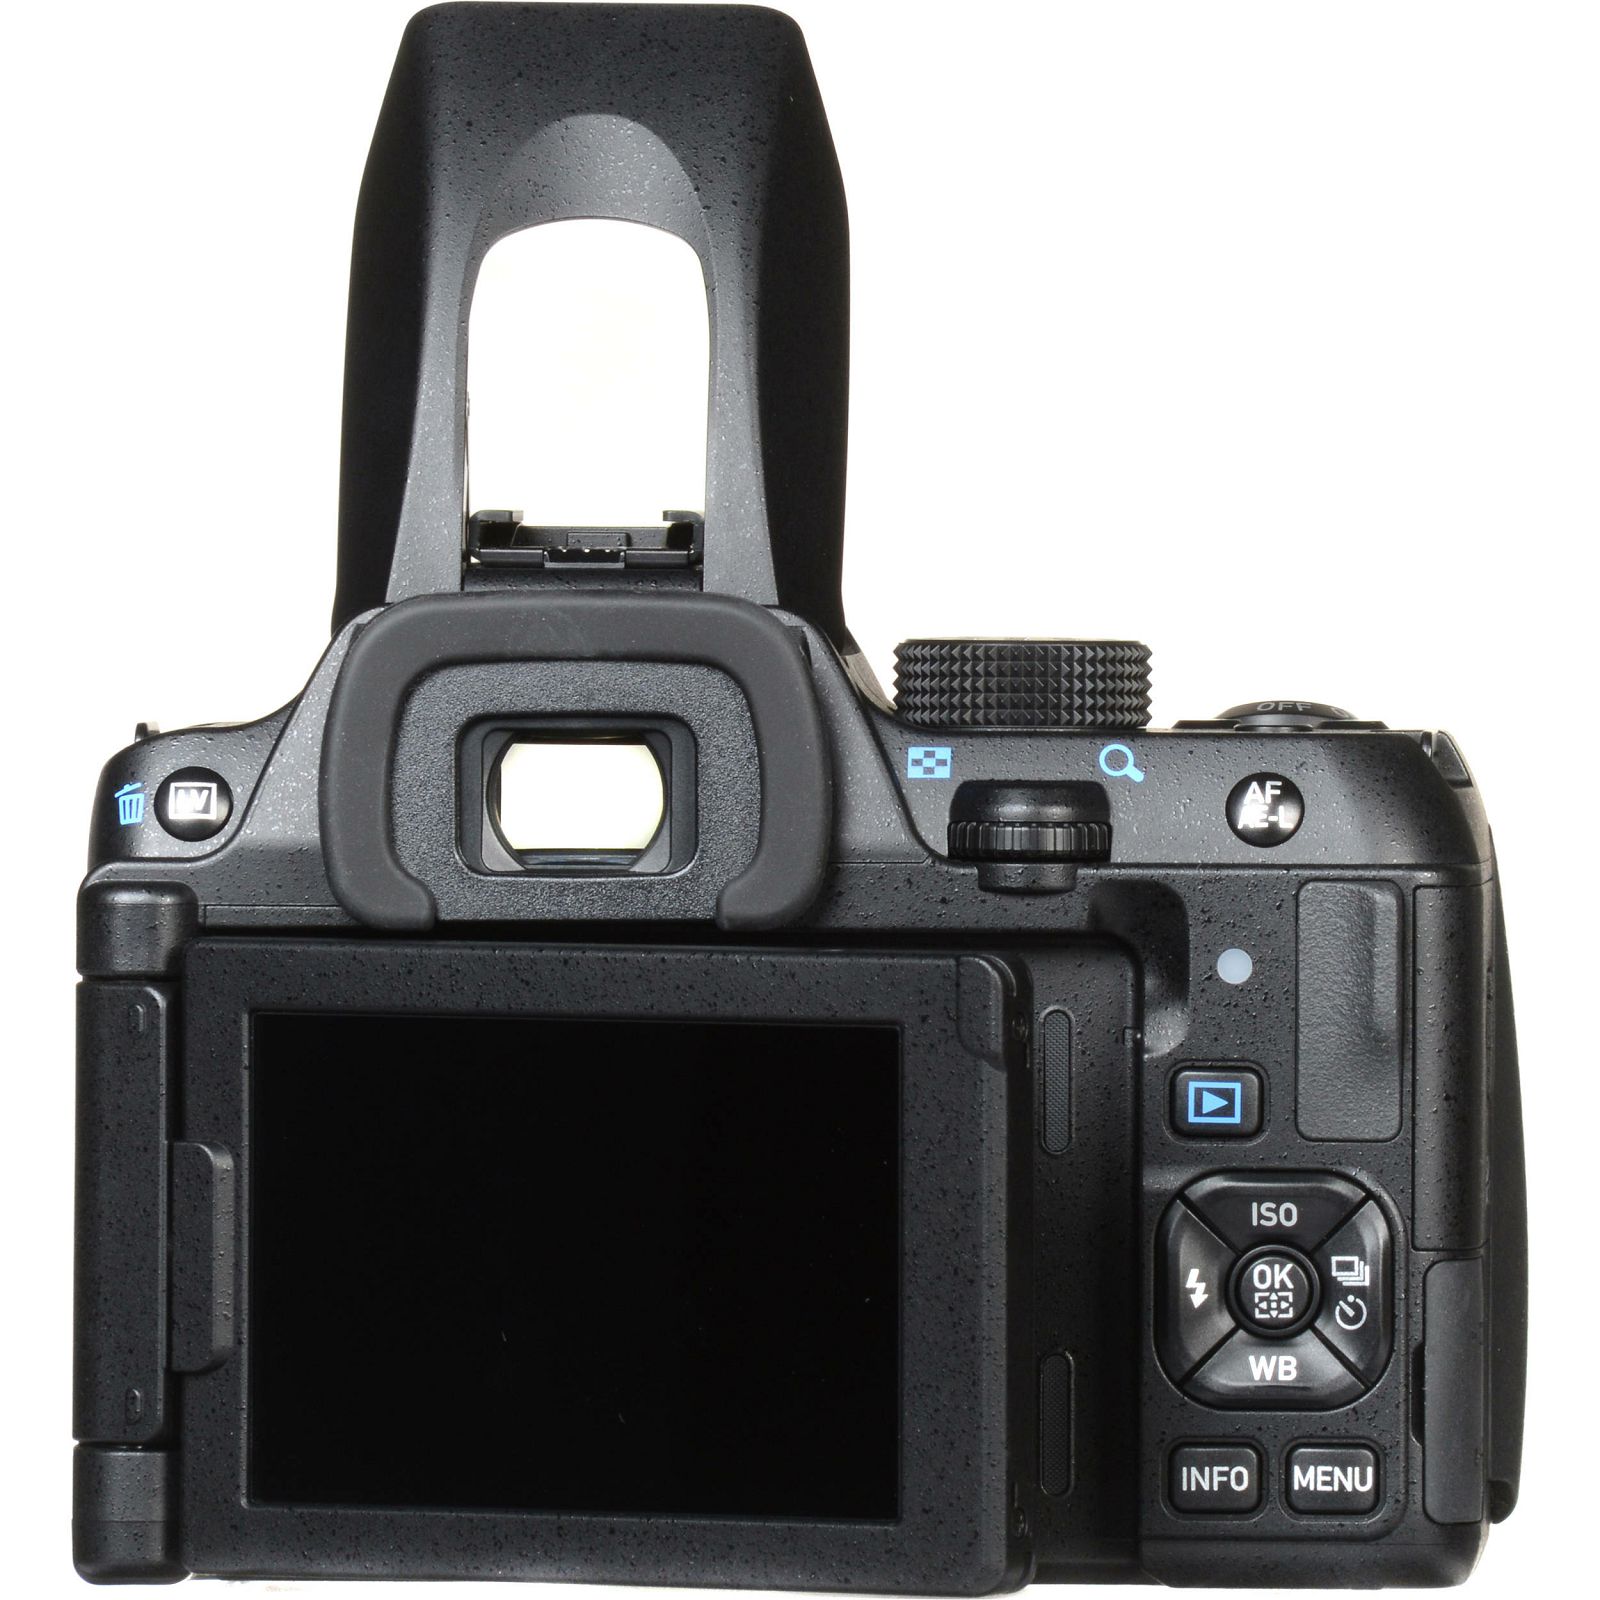 Pentax K-70 Body Black KIT DSLR Crni Digitalni fotoaparat (16242)